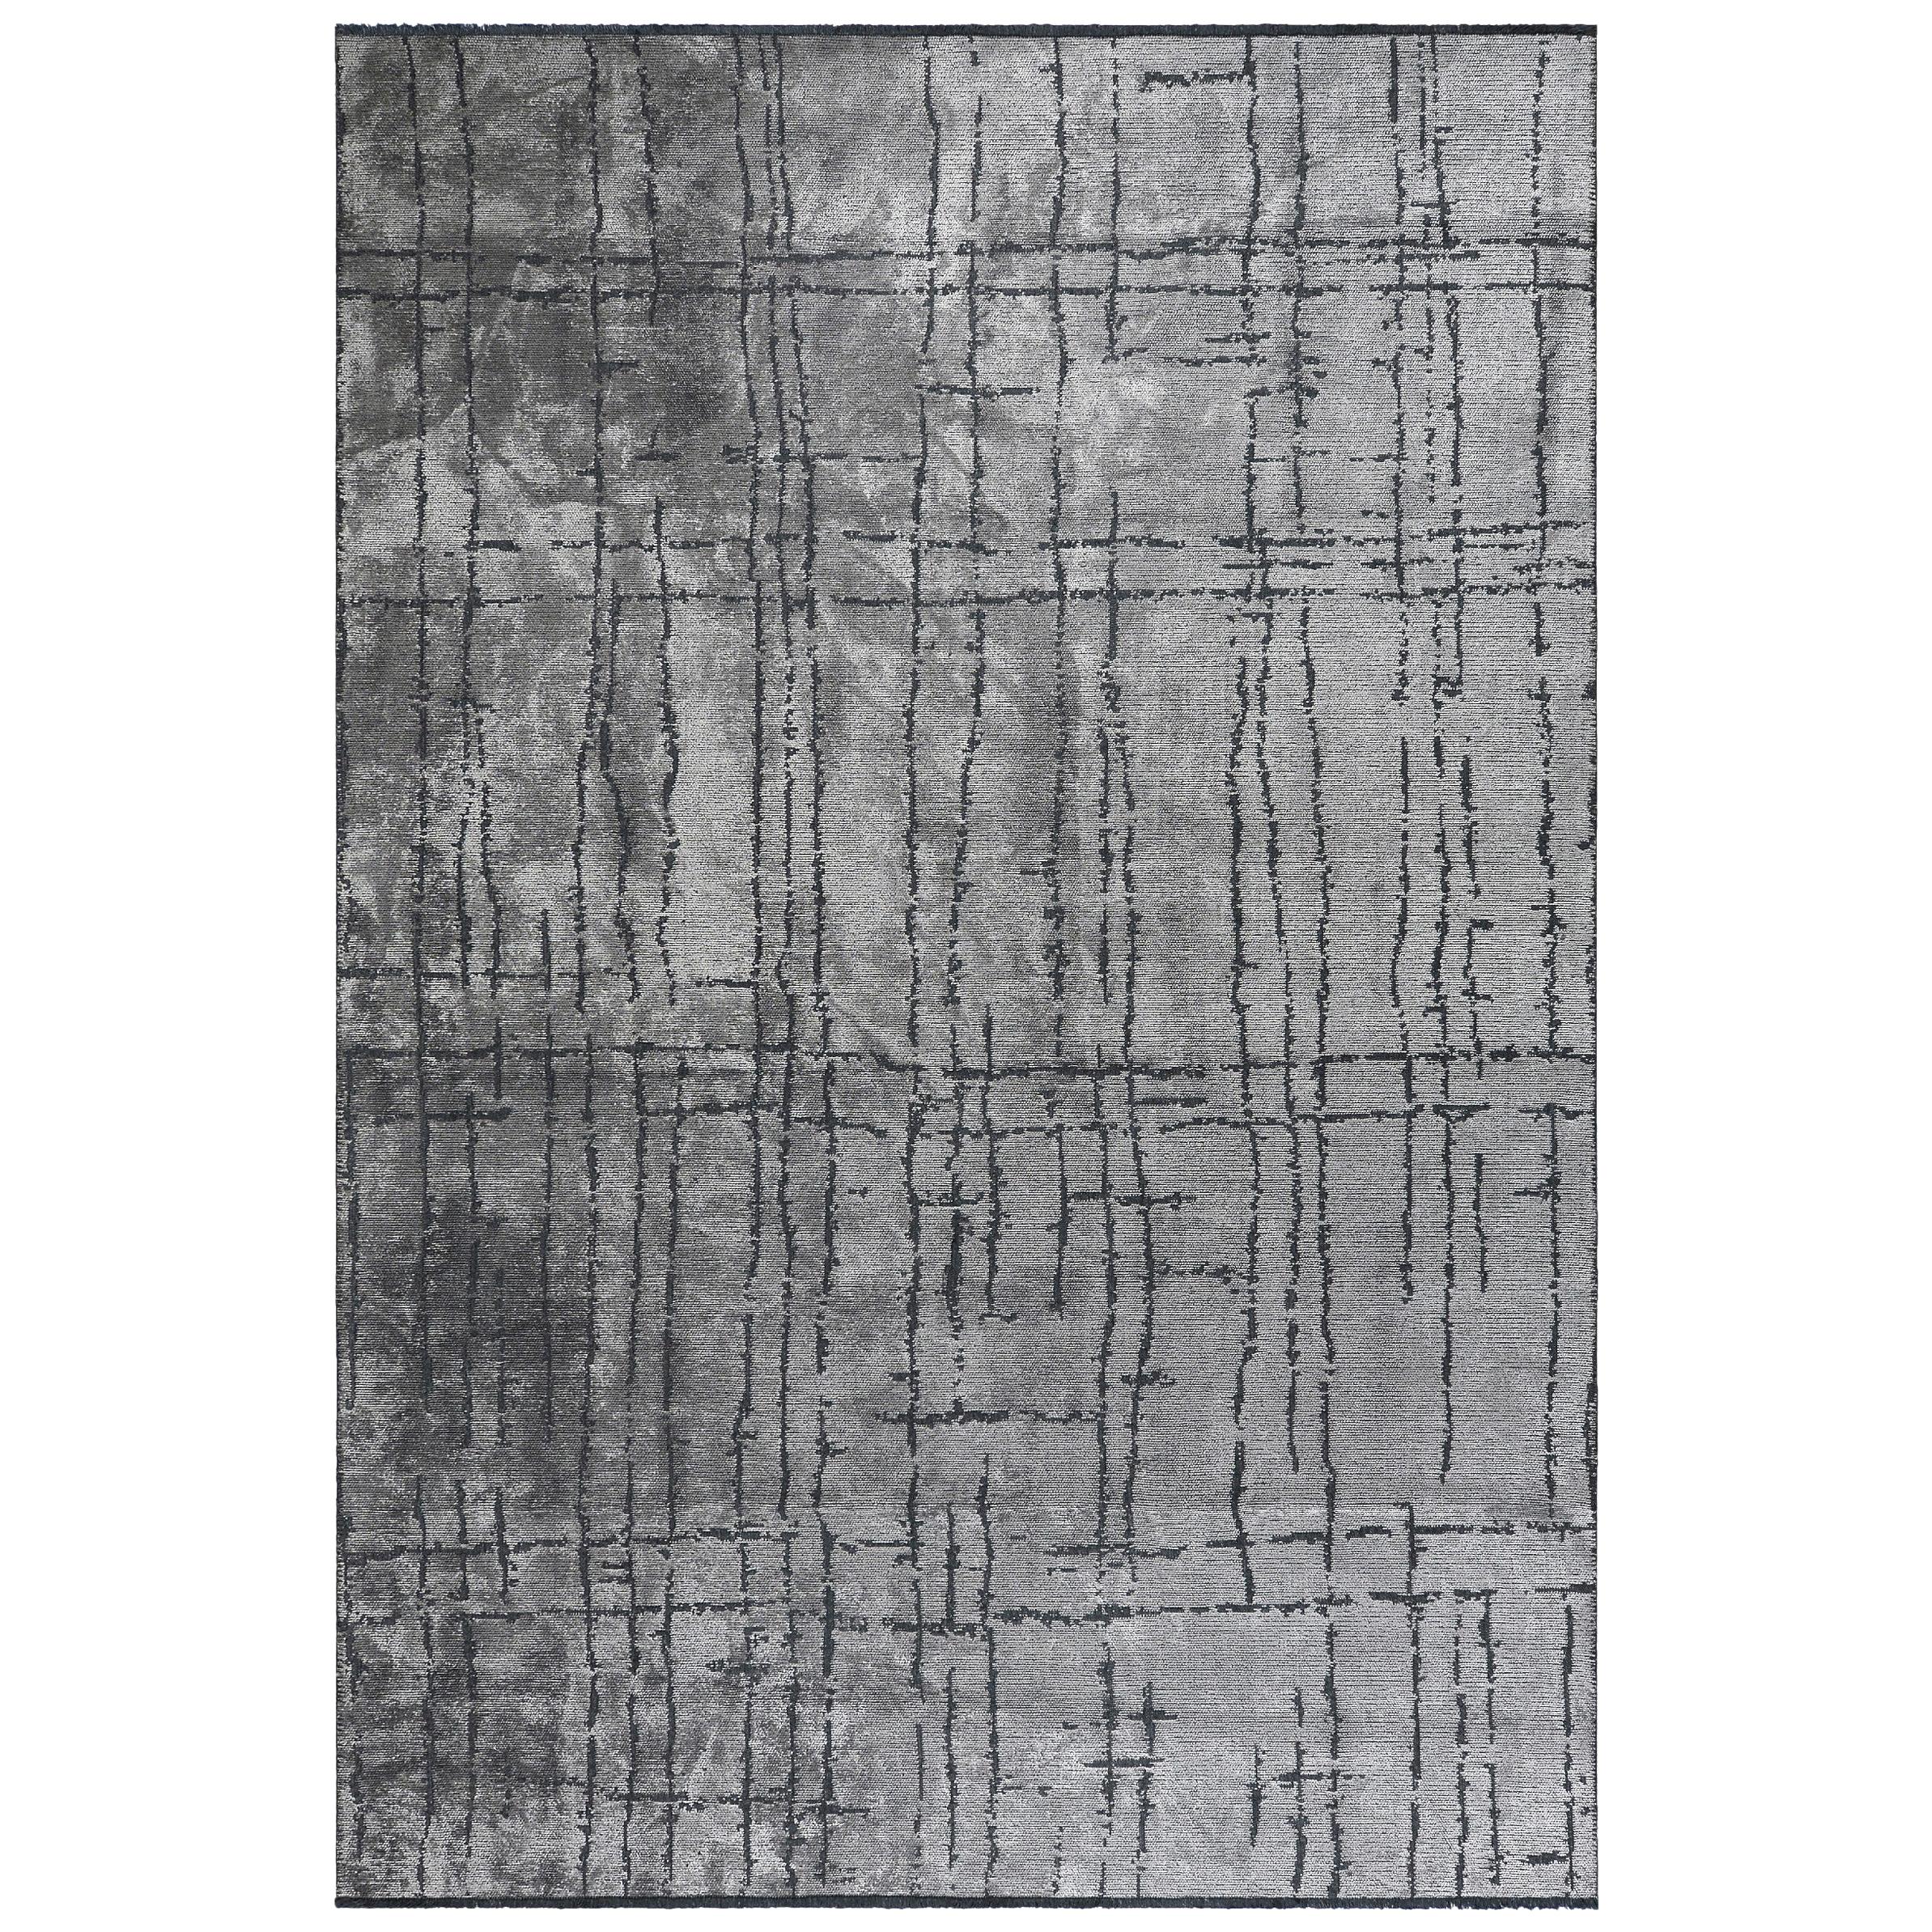 Luxuriöser, weicher Semi-Plüsch-Teppich in zeitgenössischem Design in Silber und Grau mit abstraktem Muster